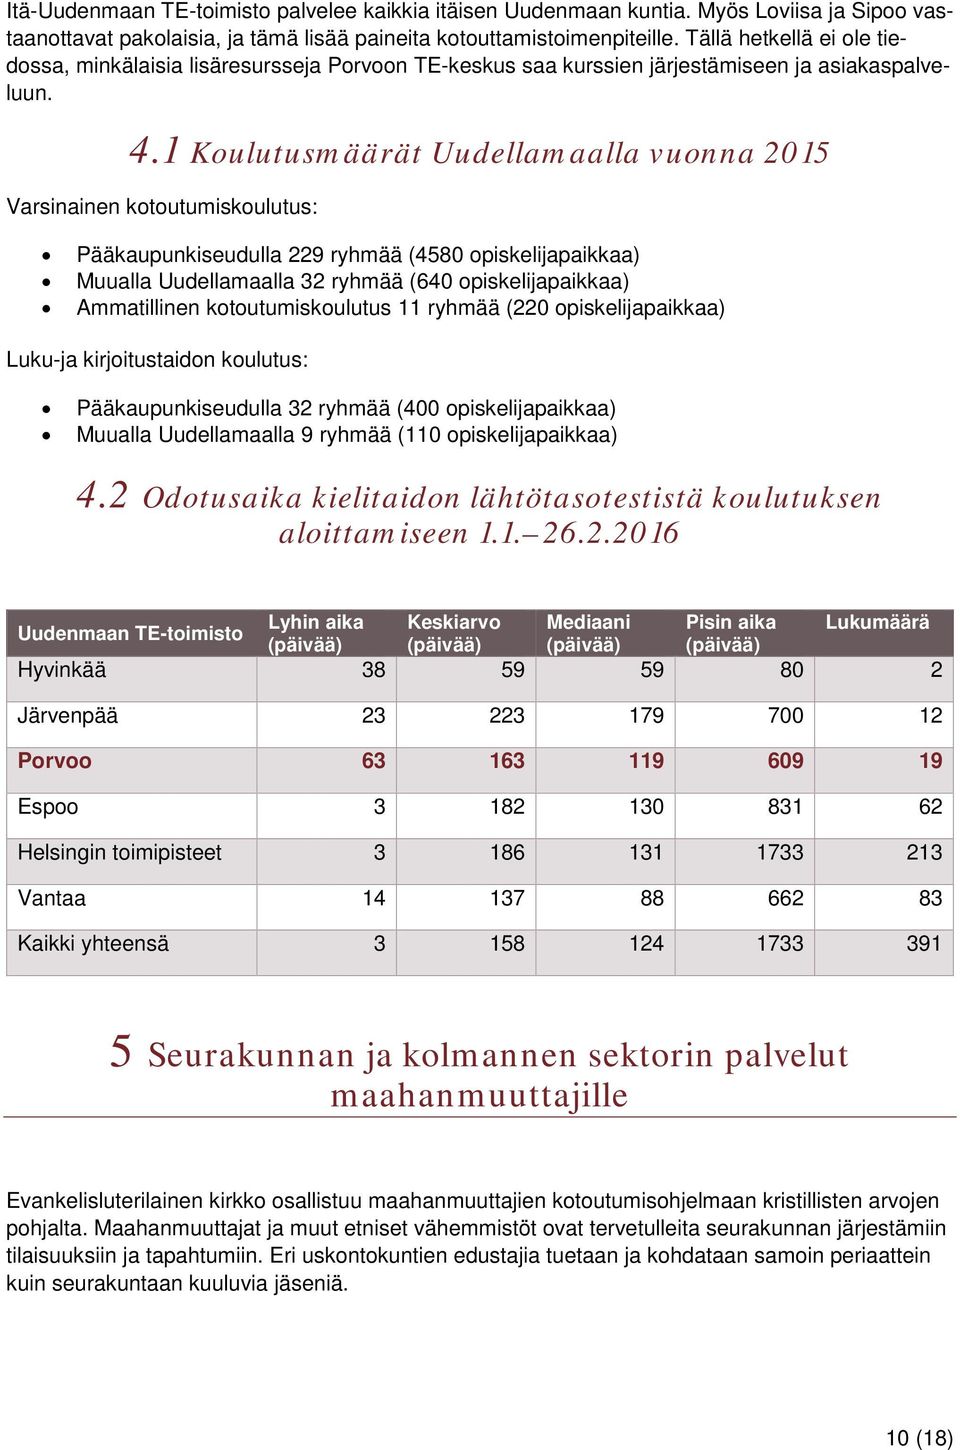 1 Koulutusmäärät Uudellamaalla vuonna 2015 Varsinainen kotoutumiskoulutus: Pääkaupunkiseudulla 229 ryhmää (4580 opiskelijapaikkaa) Muualla Uudellamaalla 32 ryhmää (640 opiskelijapaikkaa) Ammatillinen